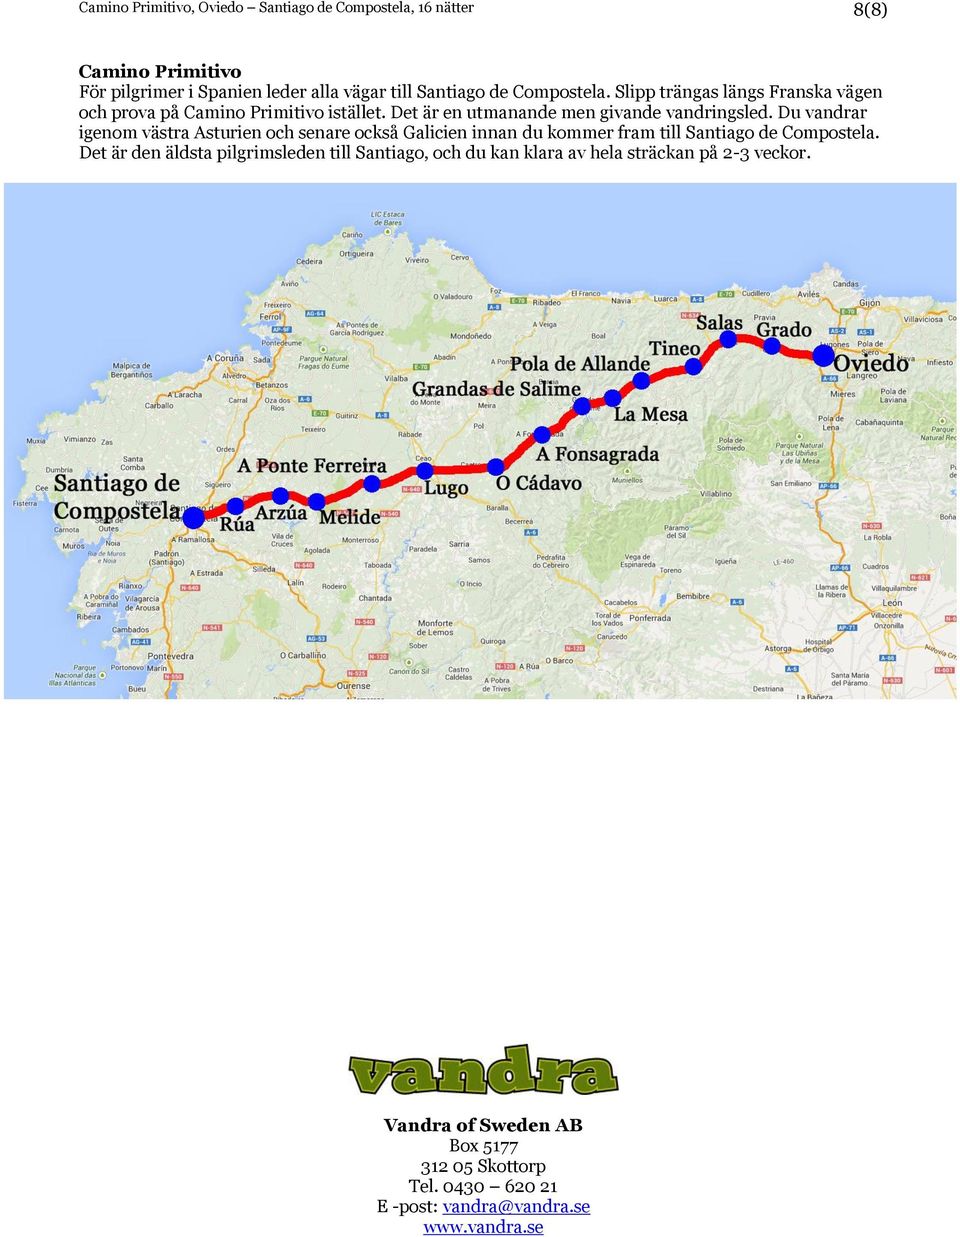 Du vandrar igenom västra Asturien och senare också Galicien innan du kommer fram till Santiago de Compostela.